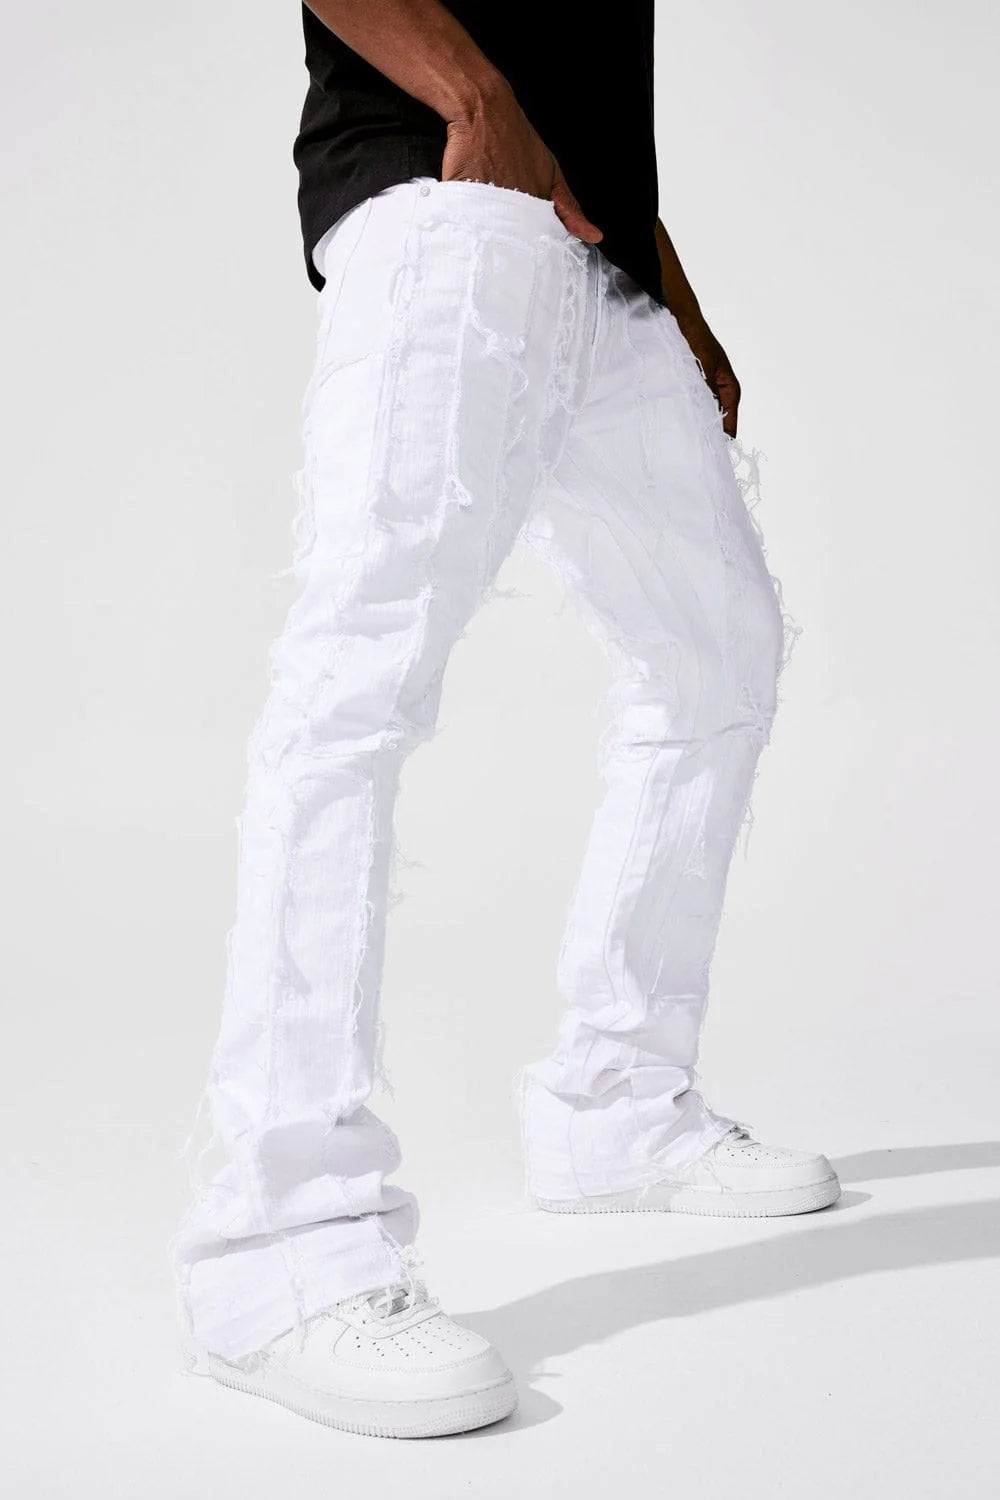 Ross Stacked - Brazen Denim Jeans - White